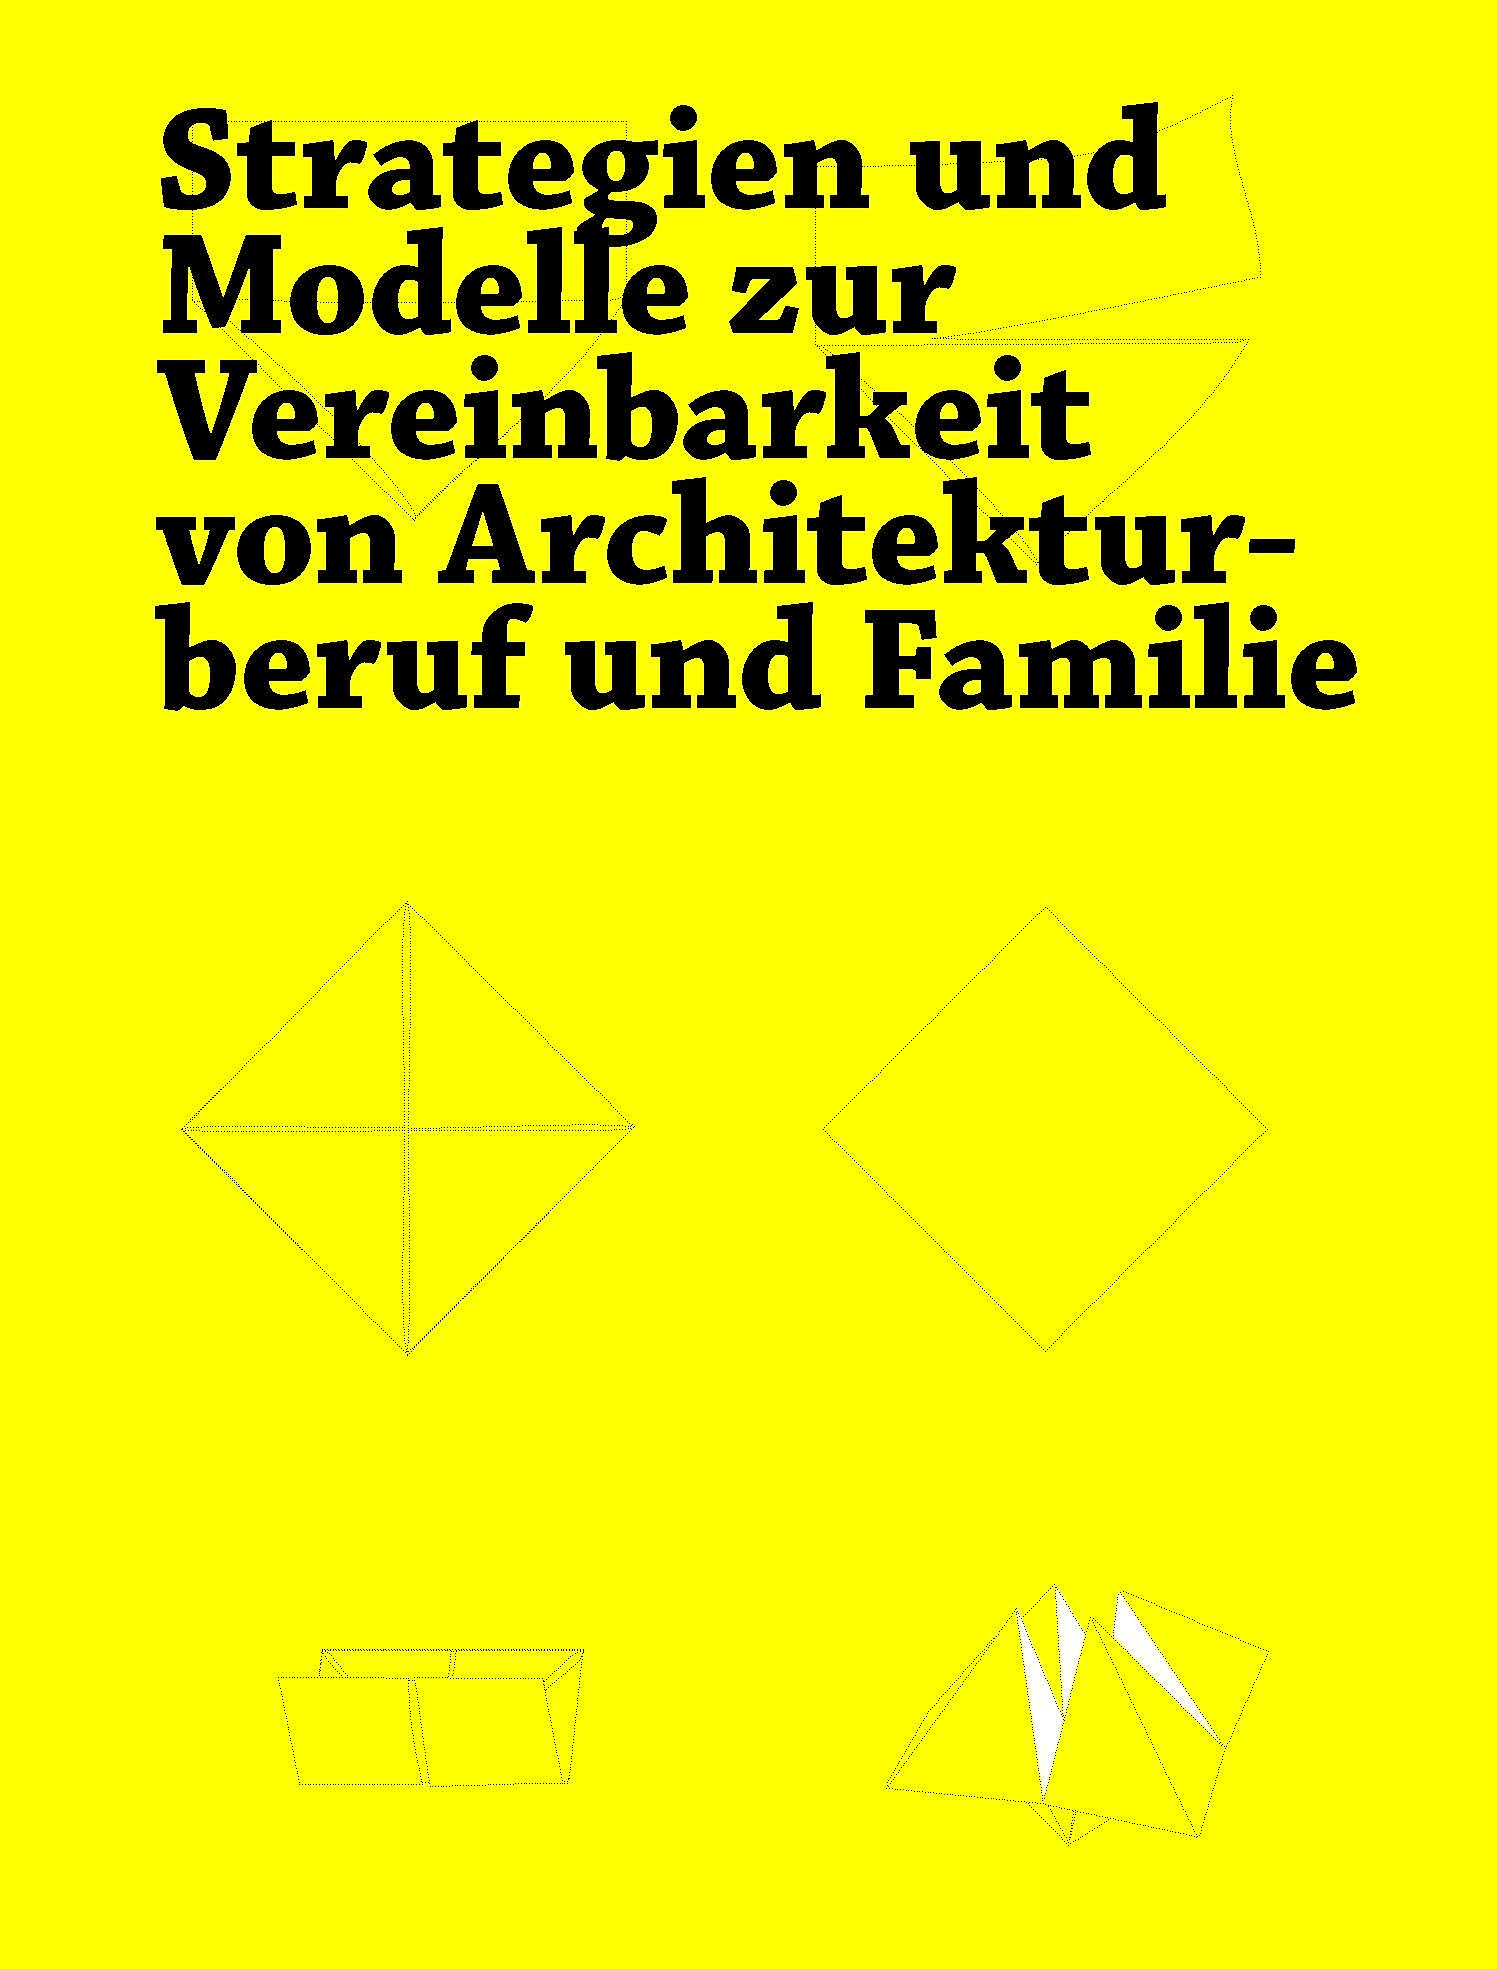 Seiten aus Vereinbarkeit Architekturberuf und Familie_Strategien, Modelle, Erfahrungen-7.jpg